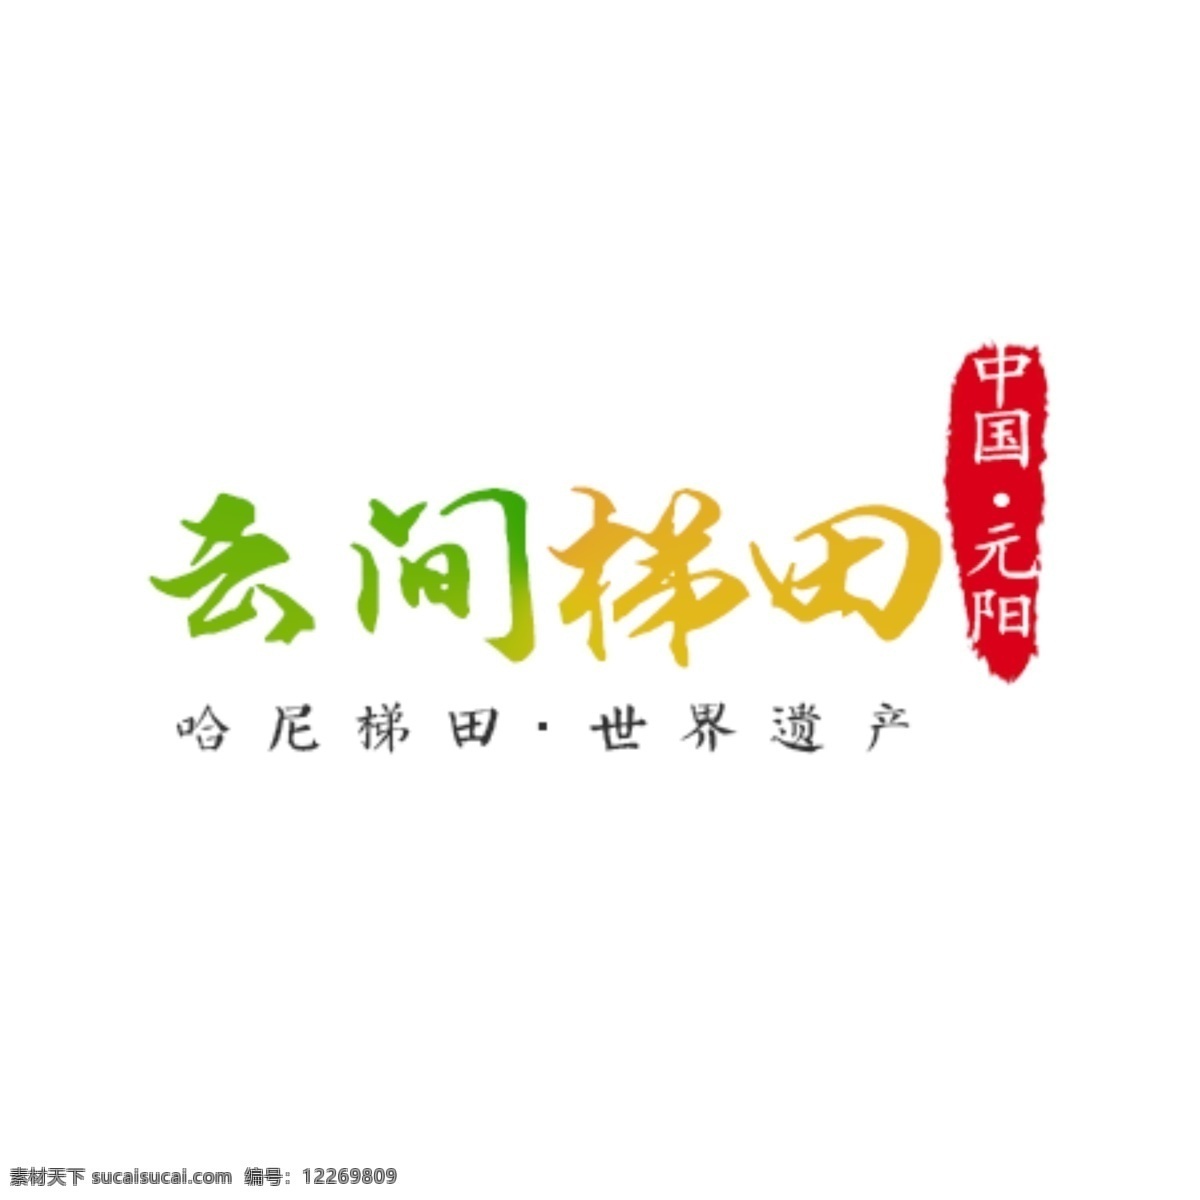 元阳 梯田 logo 哈尼 红河